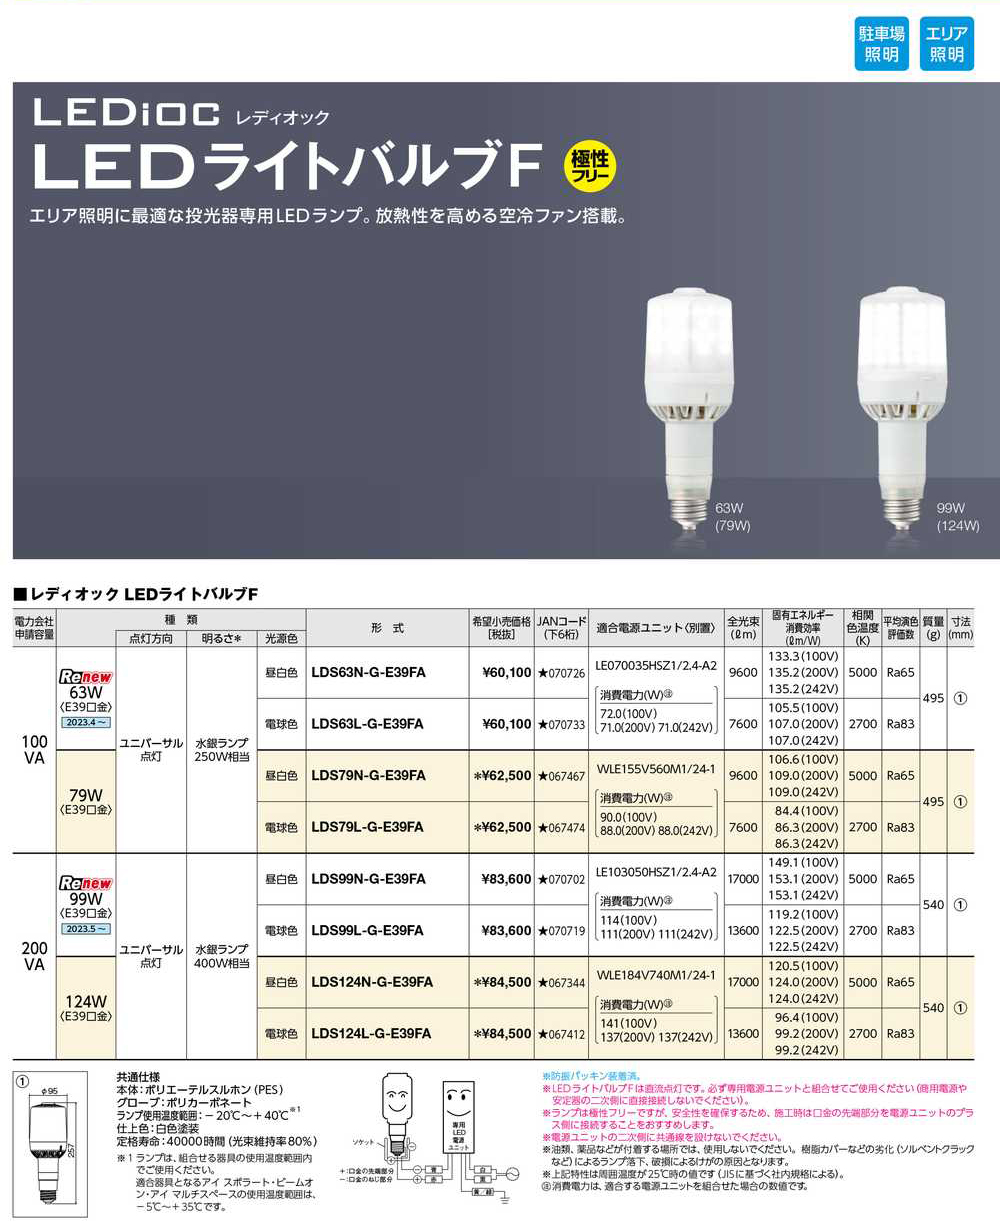 岩崎電気 LDS124N-G-E39FA レディオック LEDライトバルブF 124W (昼